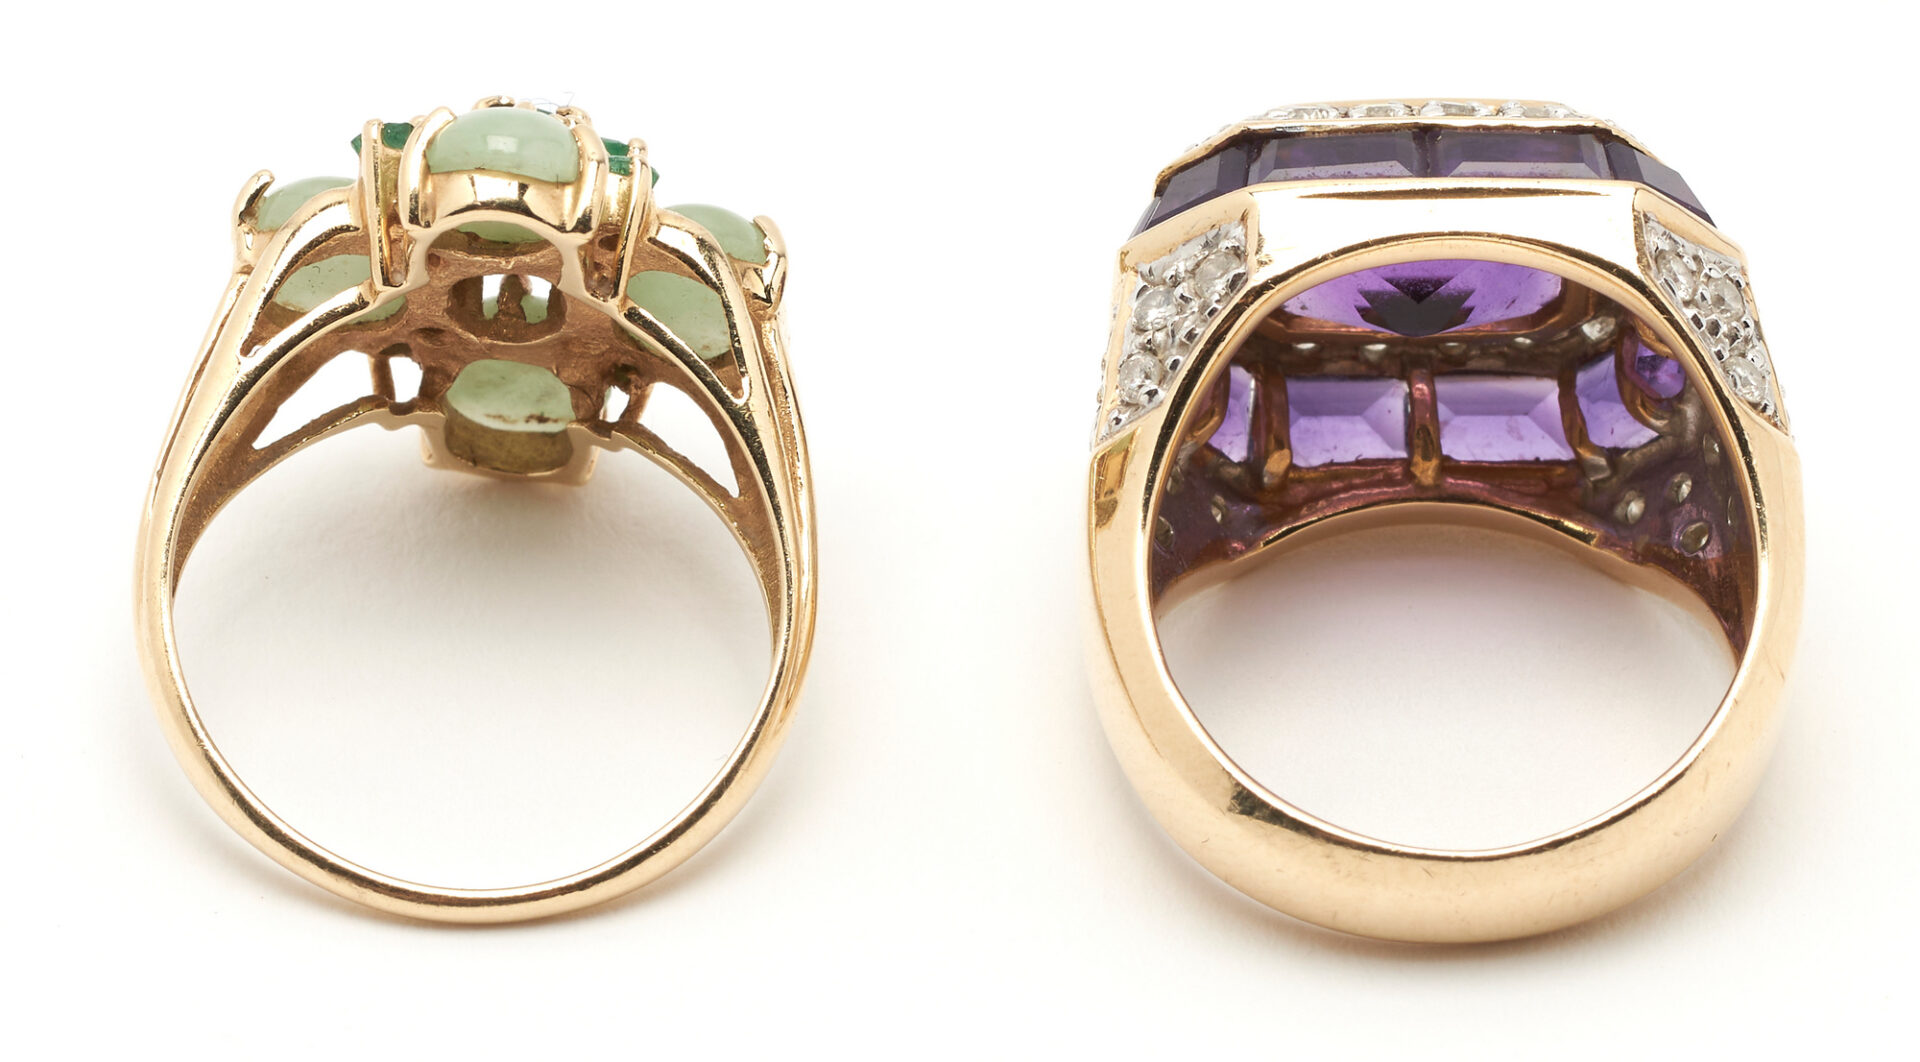 Lot 991: Ladies Rings & Bracelet, 14K w/ Gemstones, 3 items